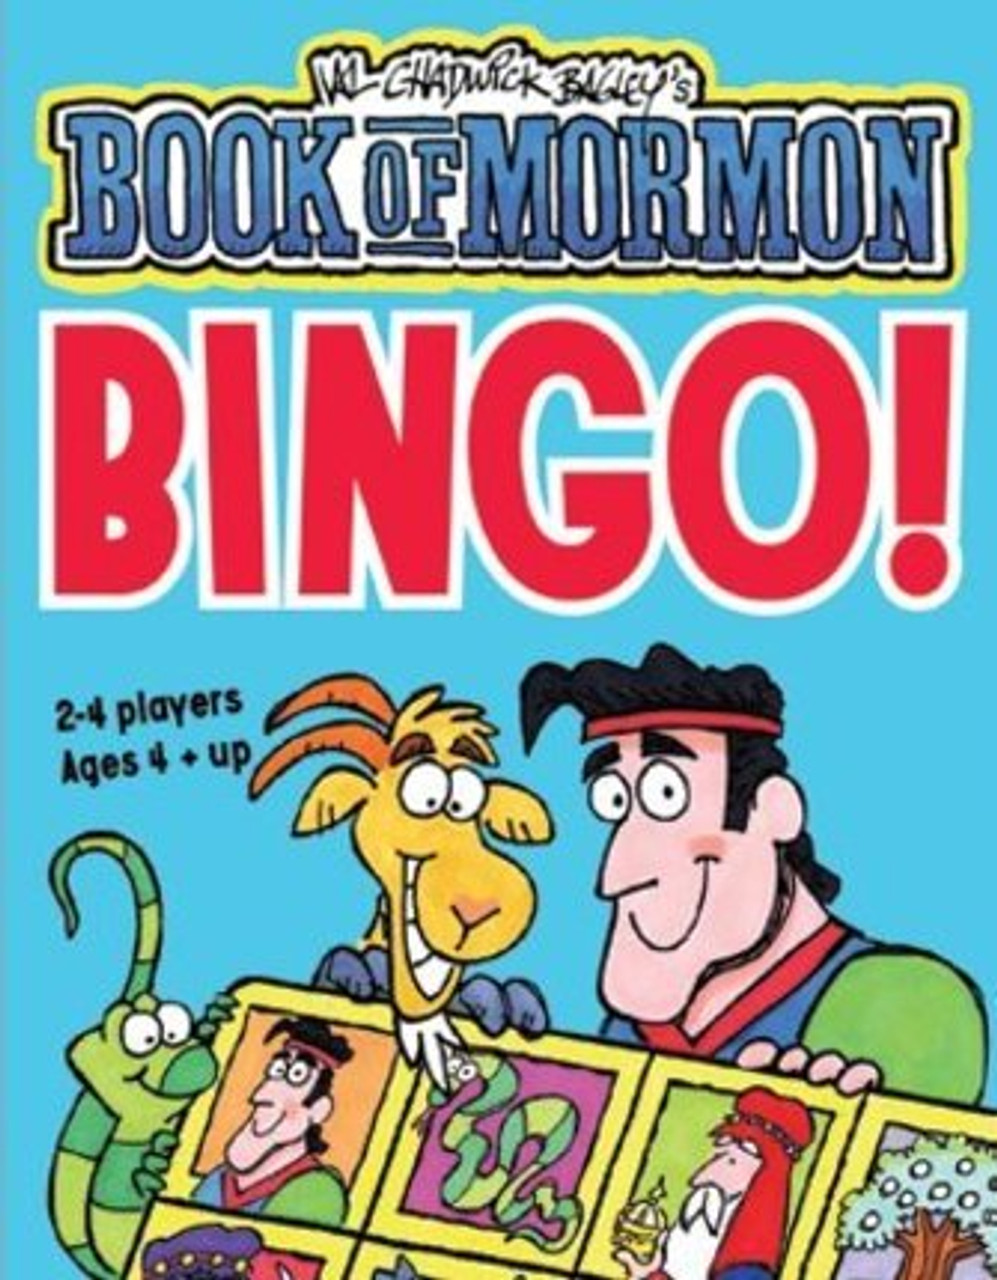 Book of Mormon Bingo (Game) *